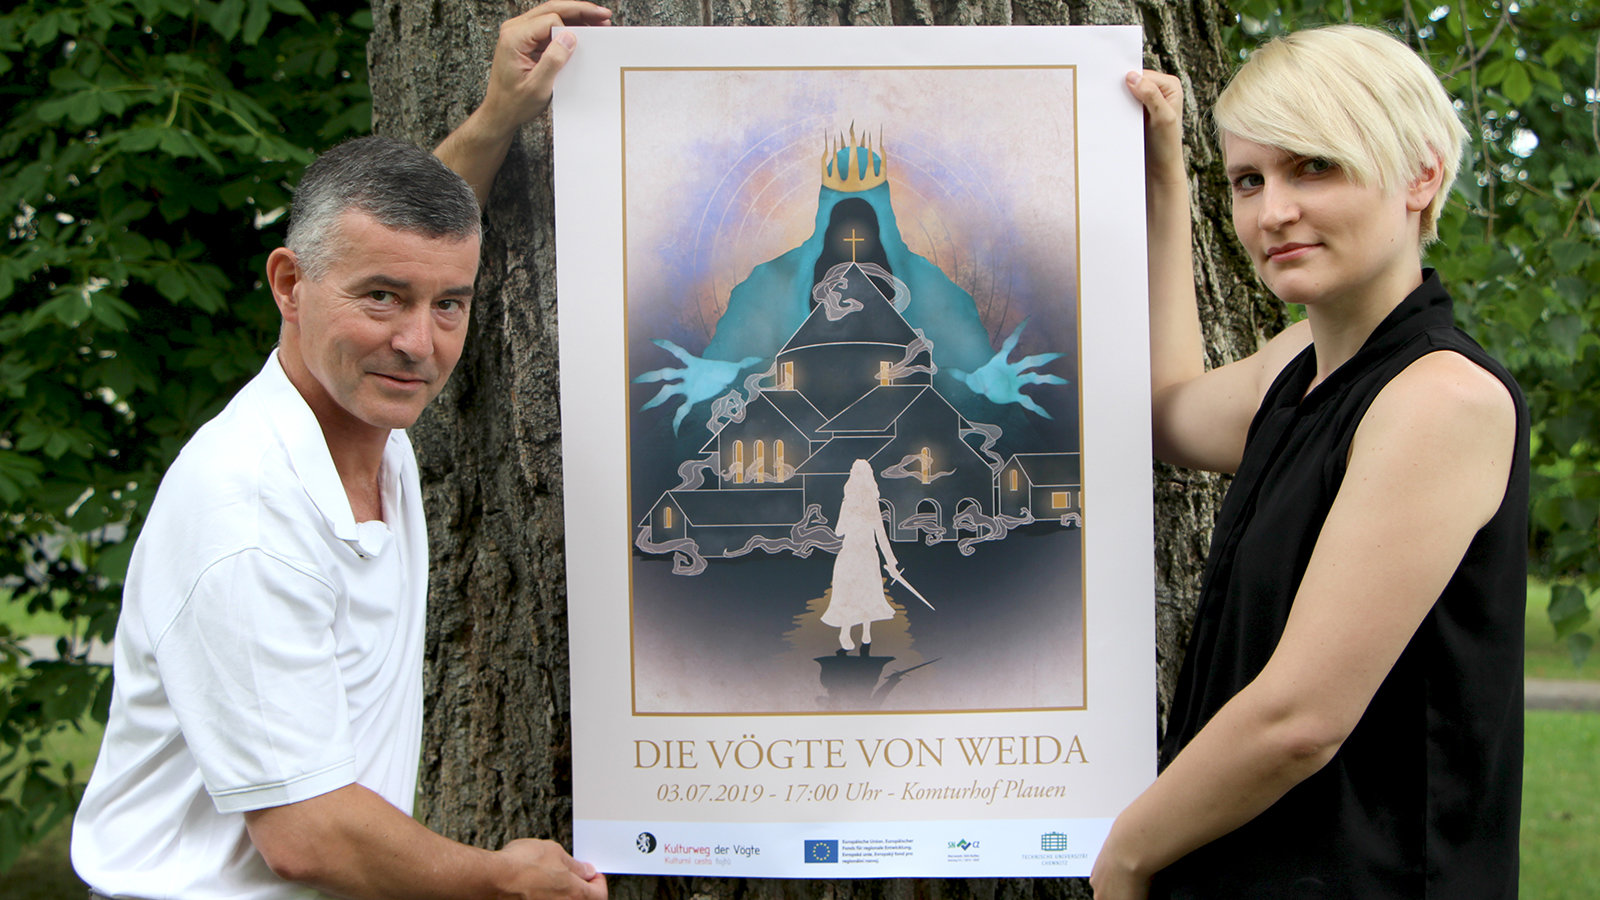  Prof. Fasbender und Luca Kirchberger halten Plakat "Die Vögte von Weida"